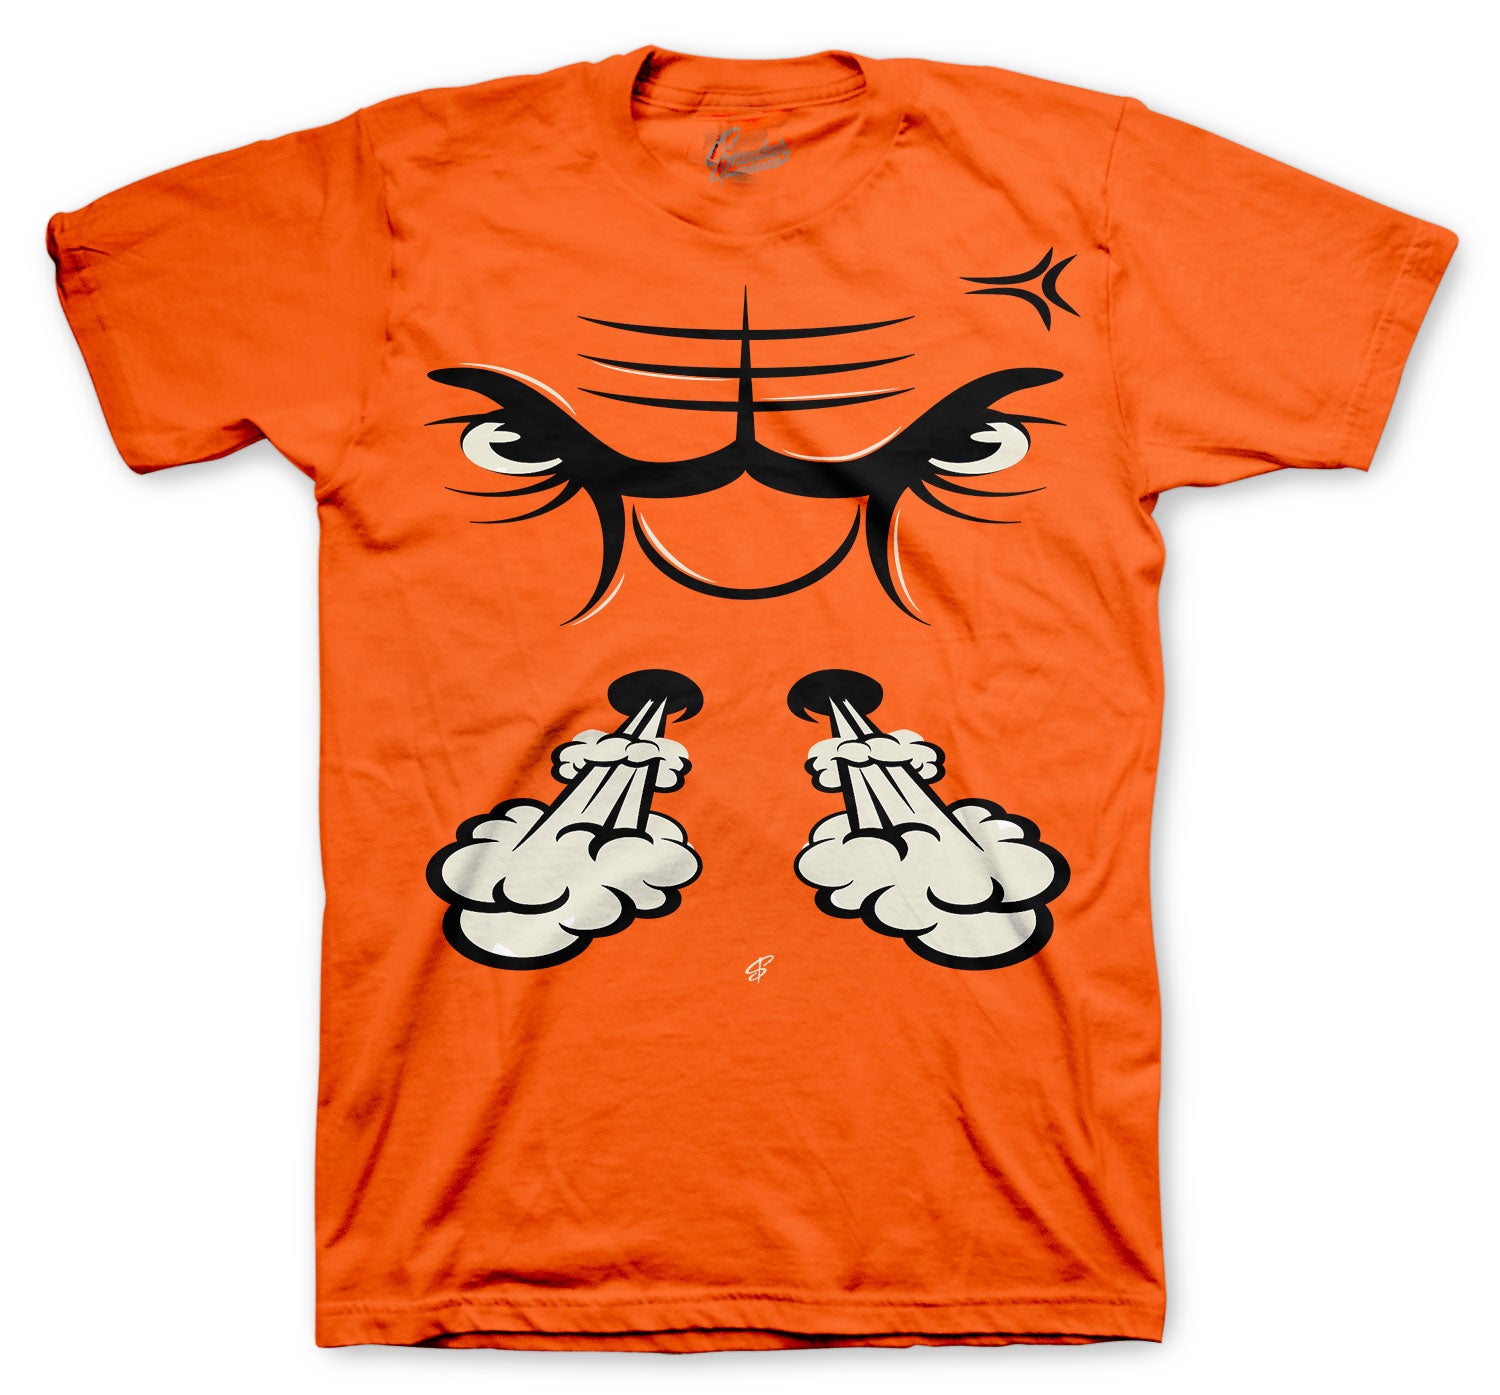 electro orange jordan 1 shirt